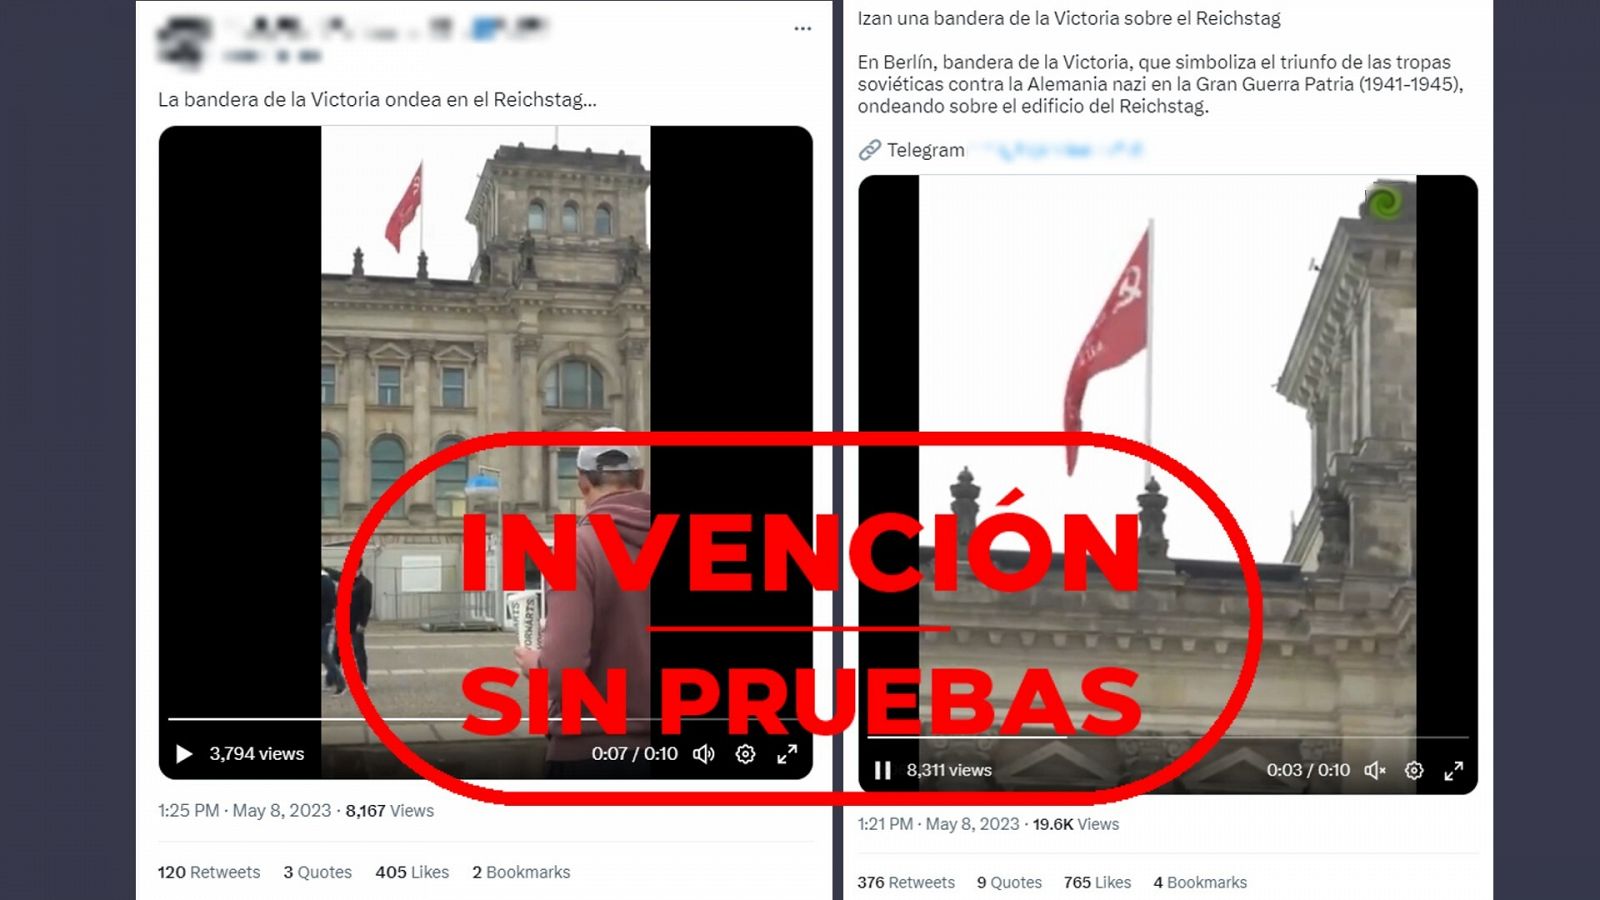 Tuits que difunden el vídeo de la bandera soviética sobre el Reichstag alemán. Con el sello Invención sin pruebas en rojo.